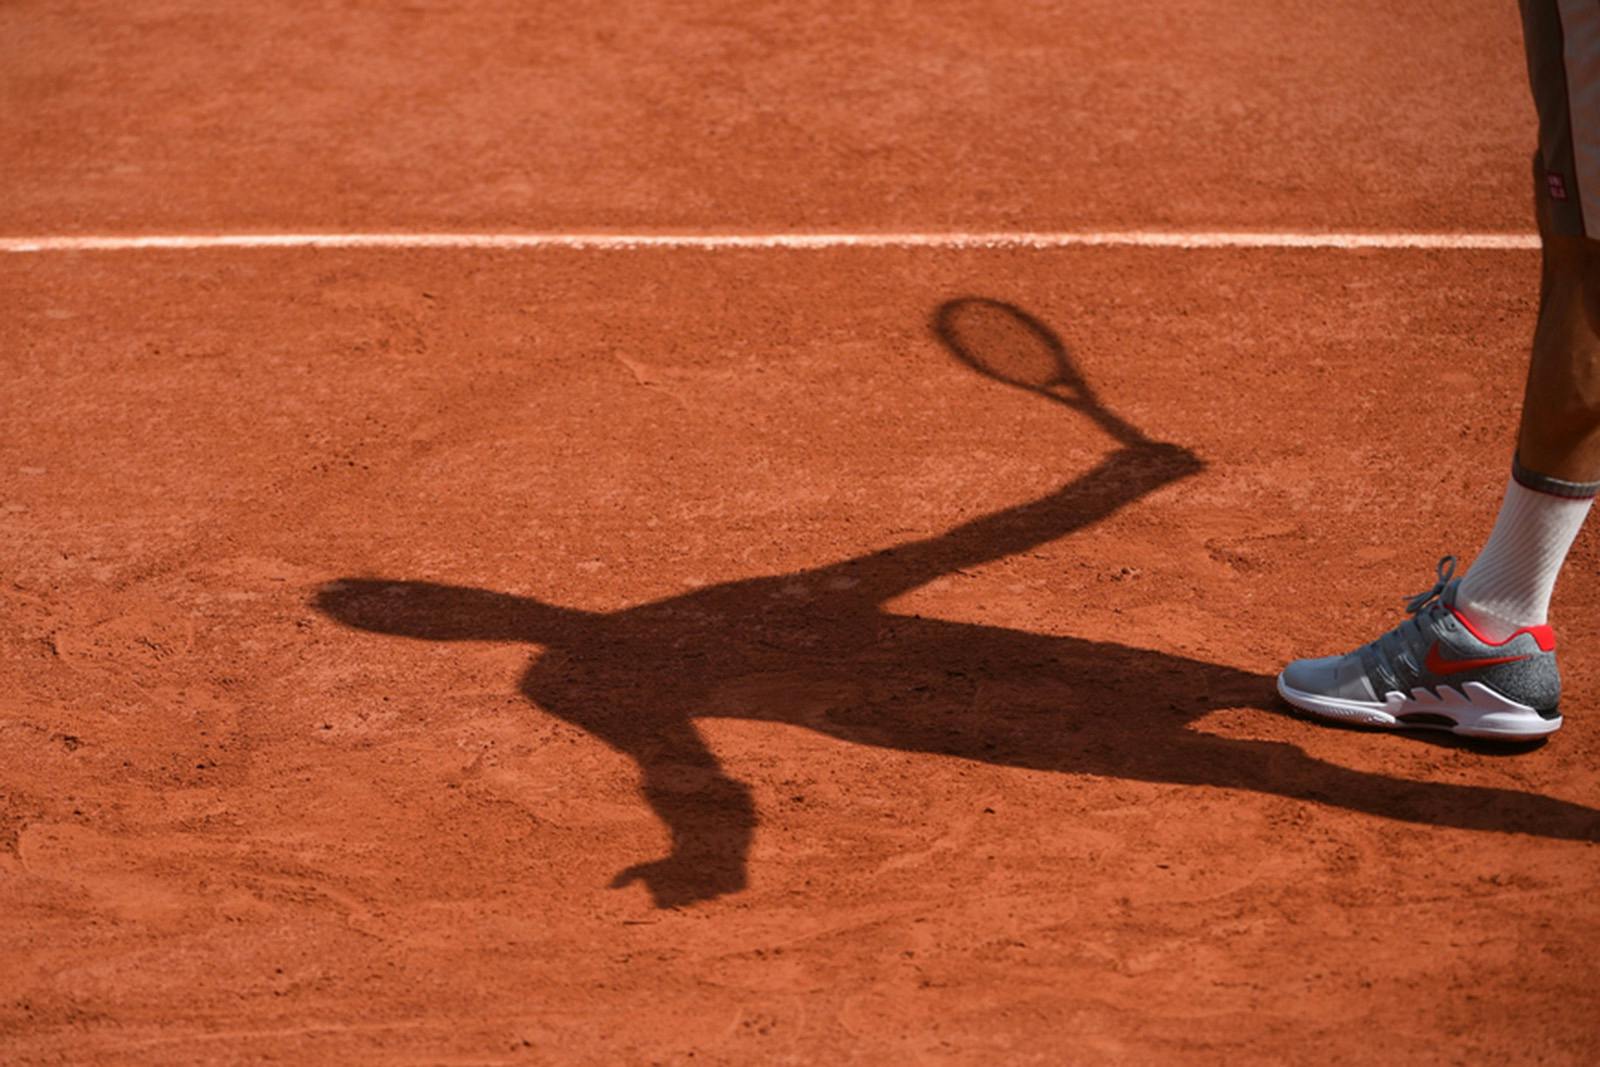 Roger Federer Roland-Garros 2019 - practice